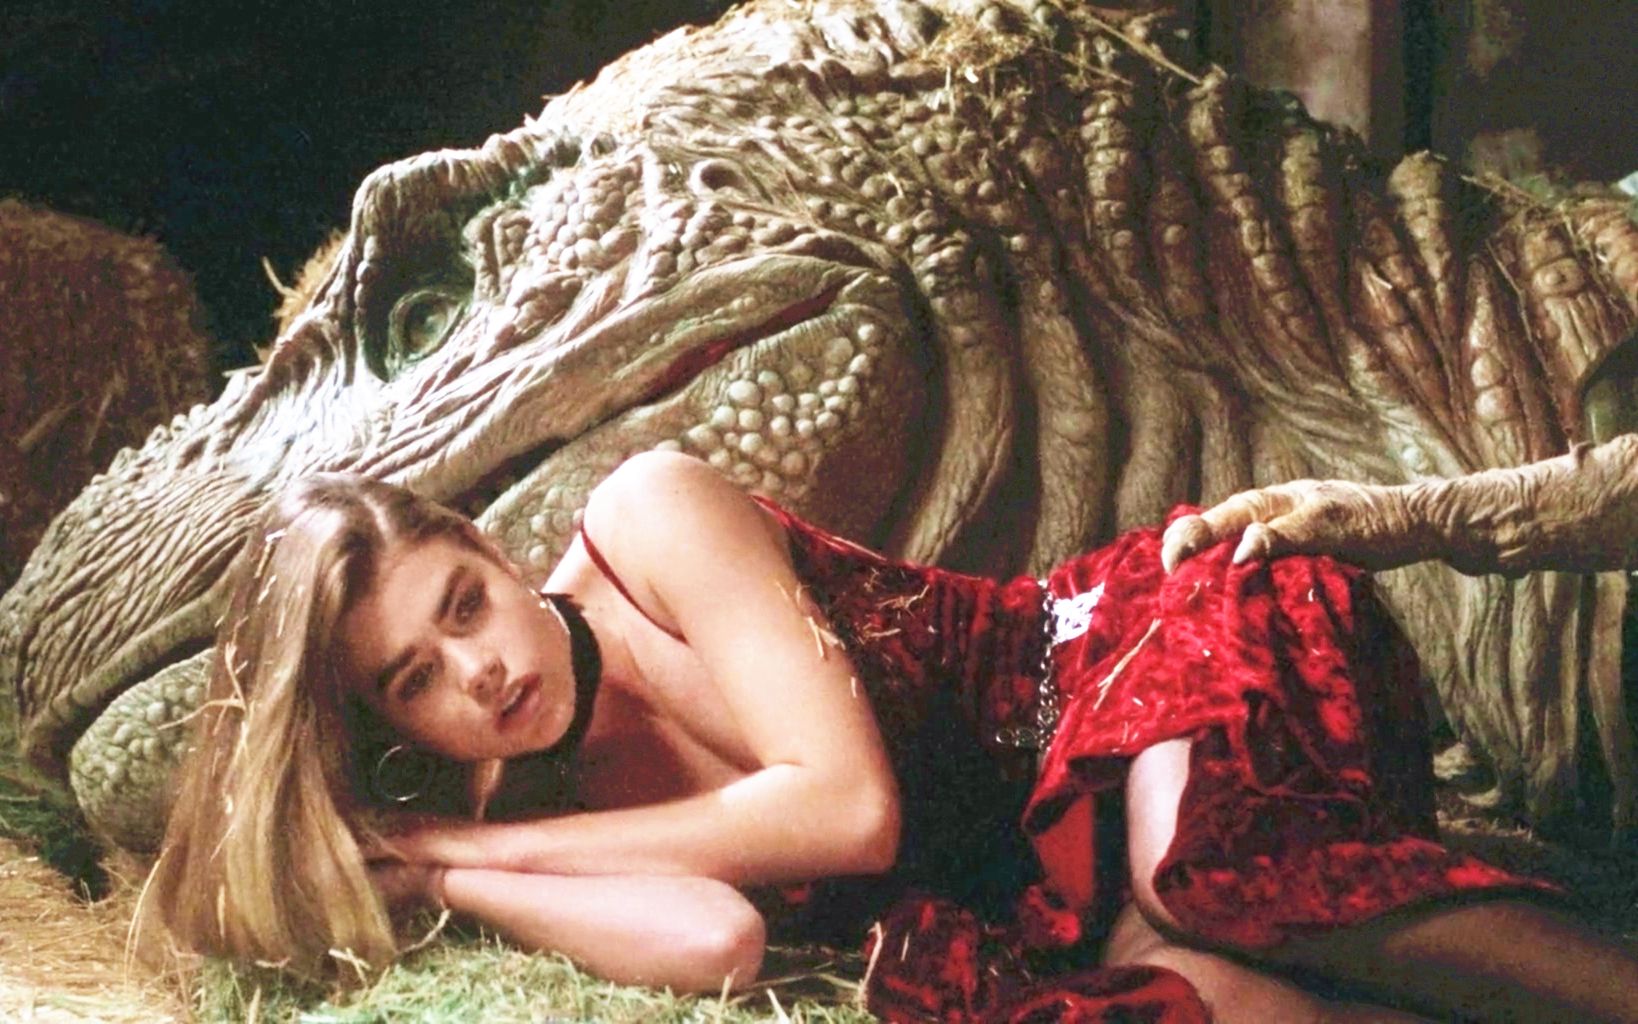 【吐嚎】少女与5米高恐龙恋爱， 26年前低成本影片两位主演如今成为巨星